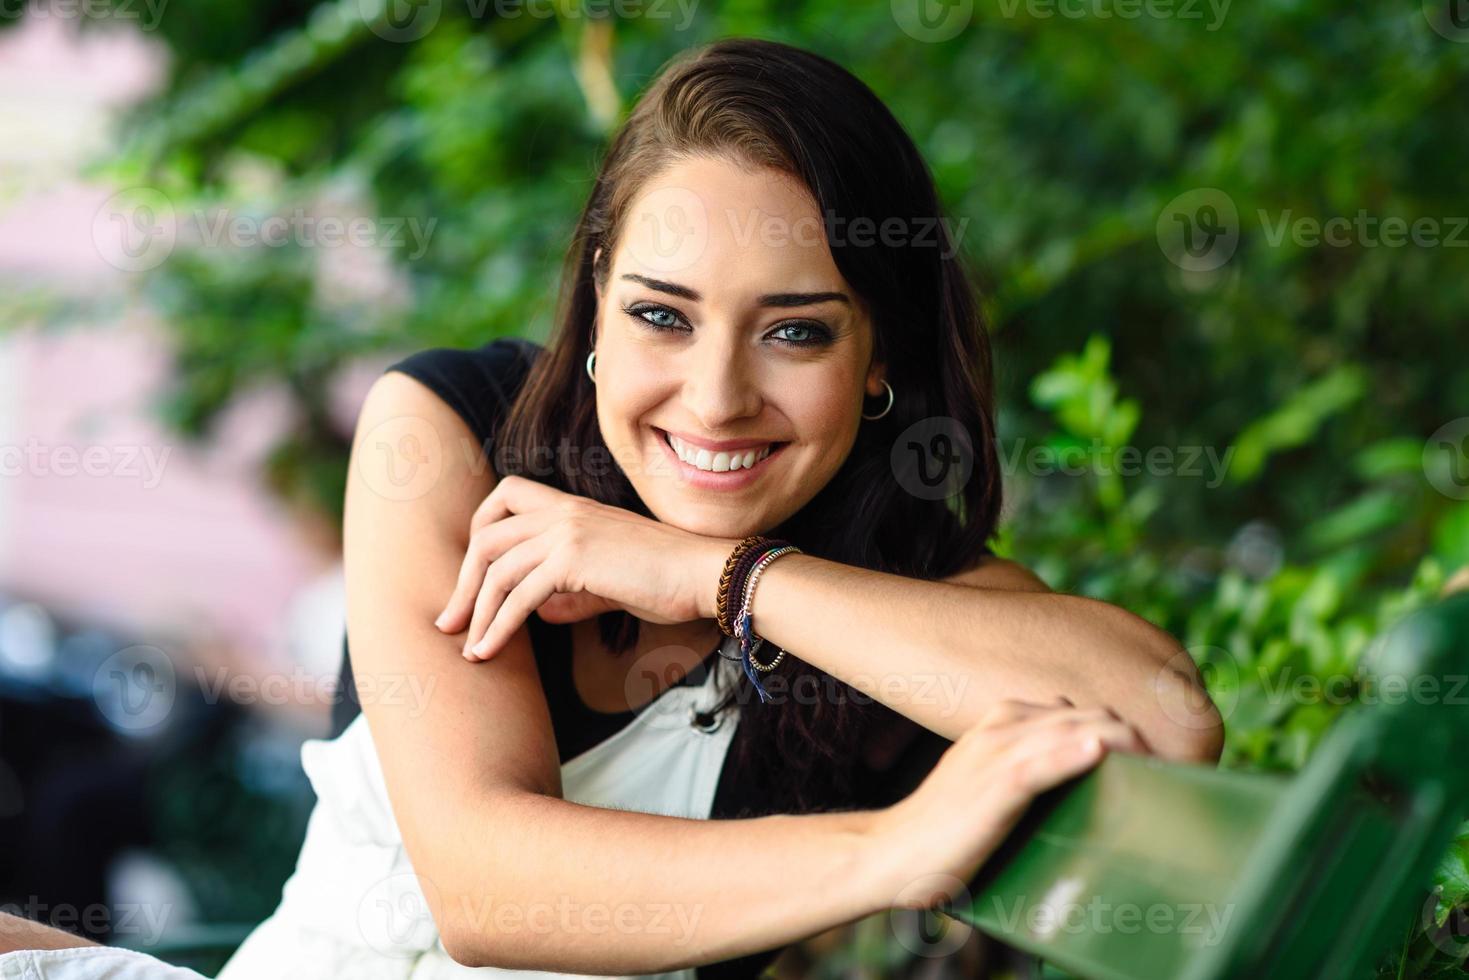 giovane donna felice con gli occhi azzurri che guarda l'obbiettivo. foto